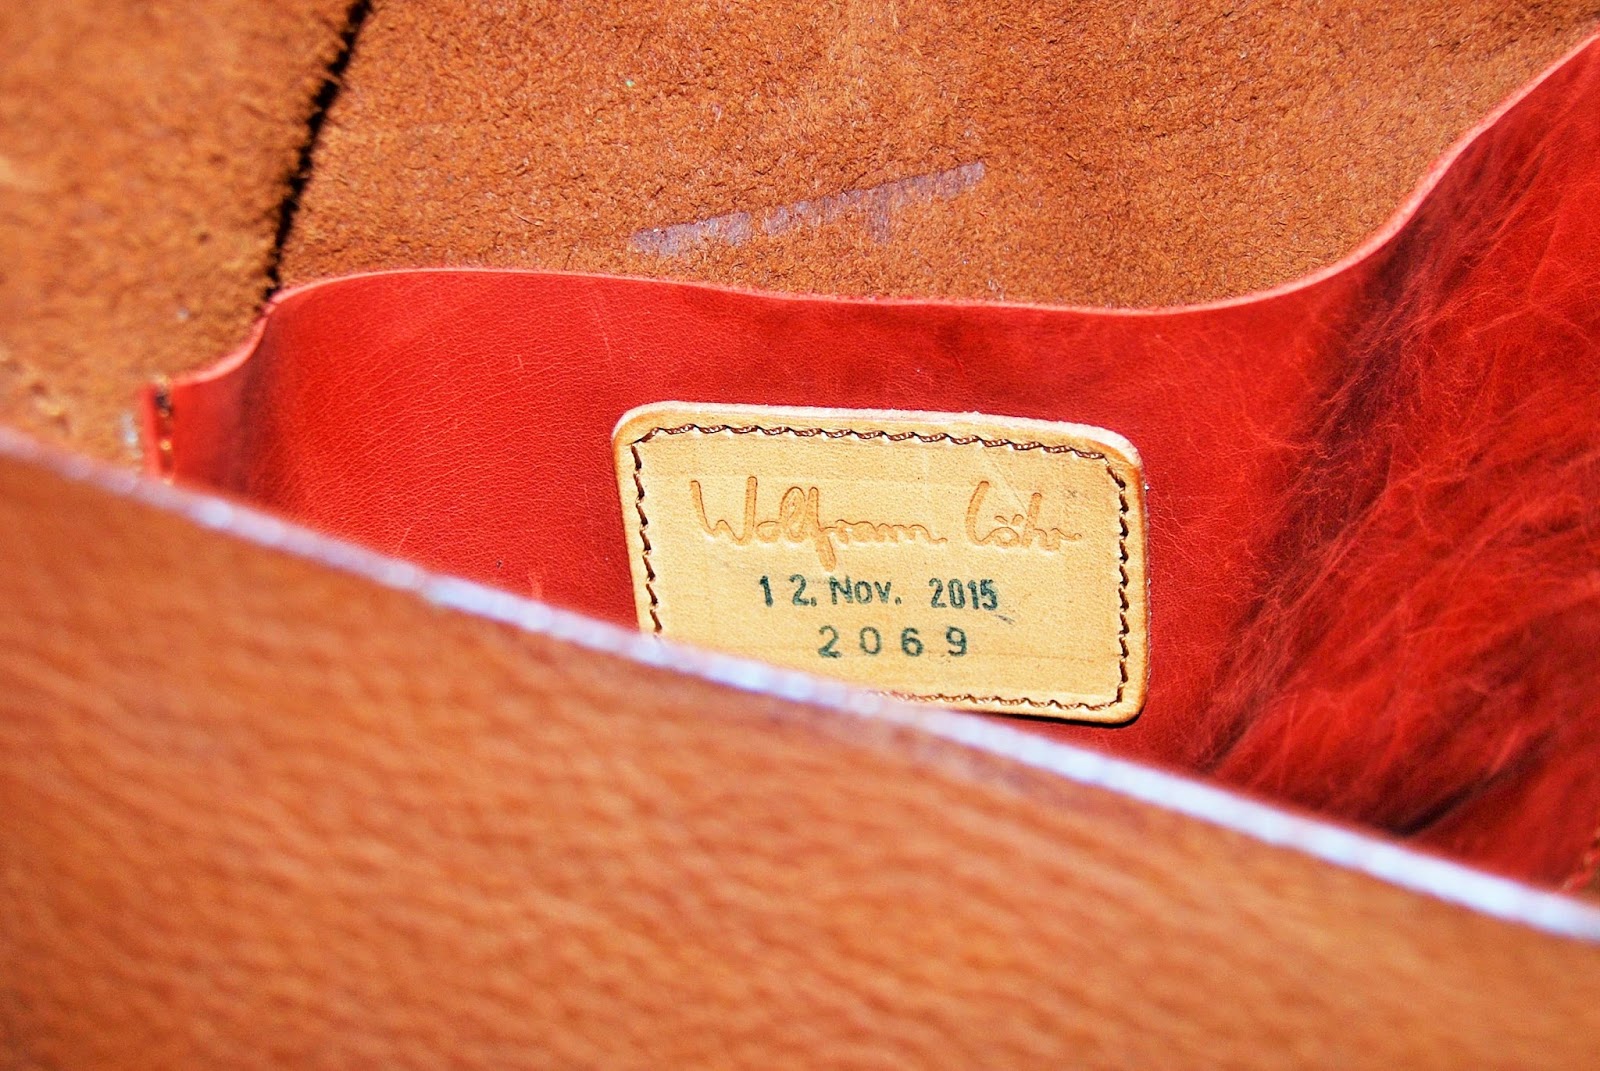 Wolfram Lohr leather, photo by Modern Bric a Brac